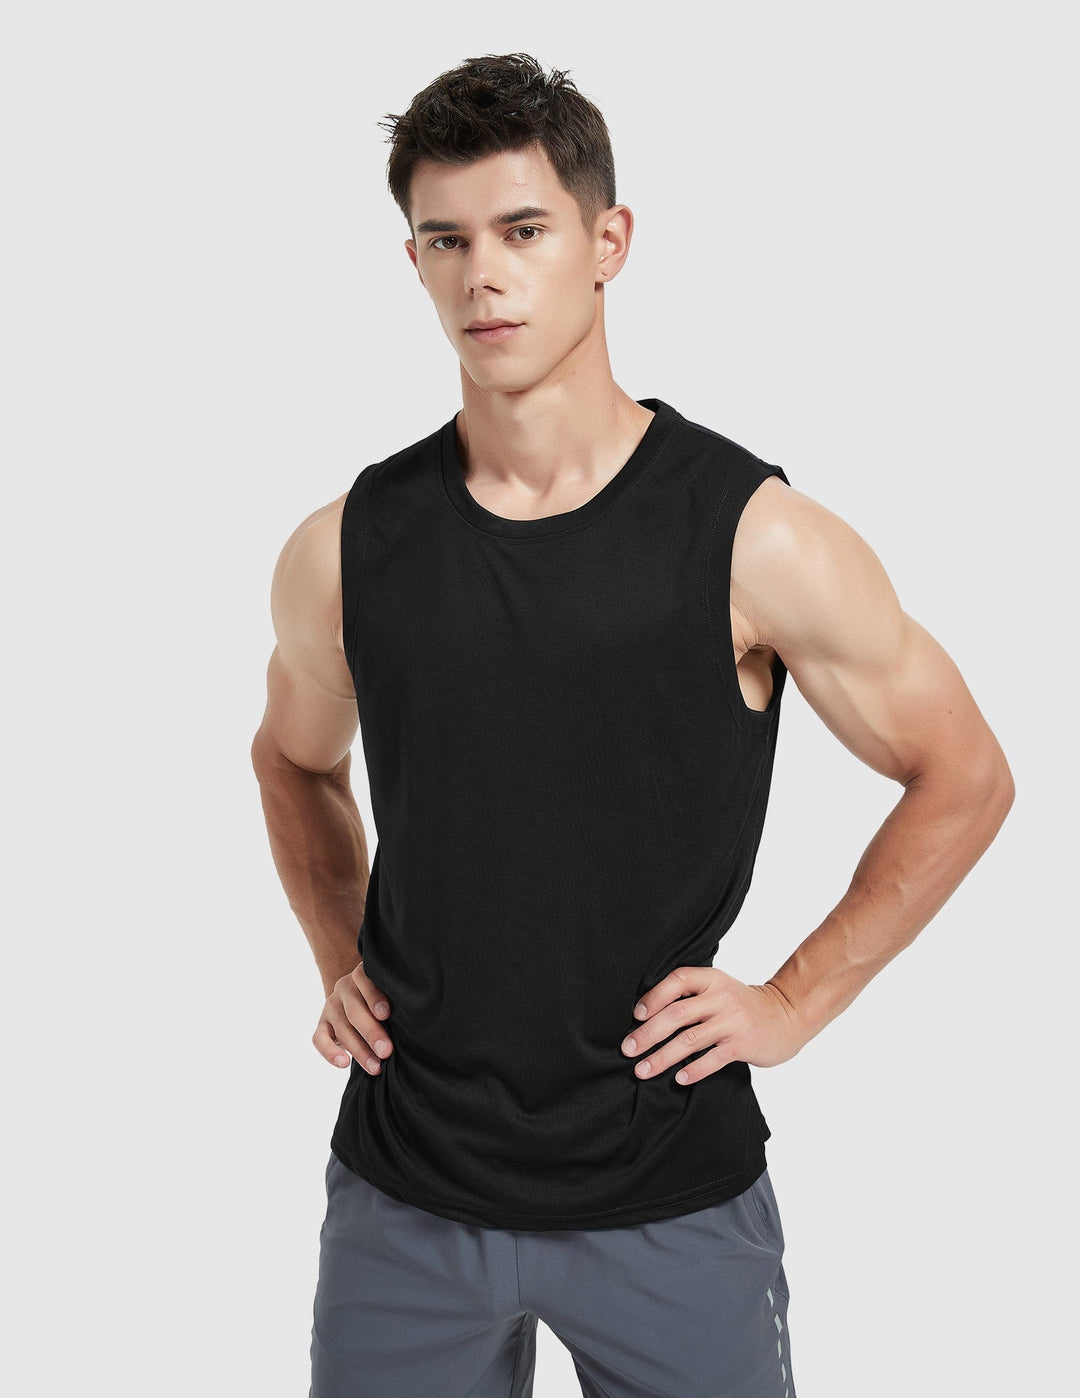 MIER Men Lightweight UPF 50+ Sun Shirts Quick Dry Tank Tops